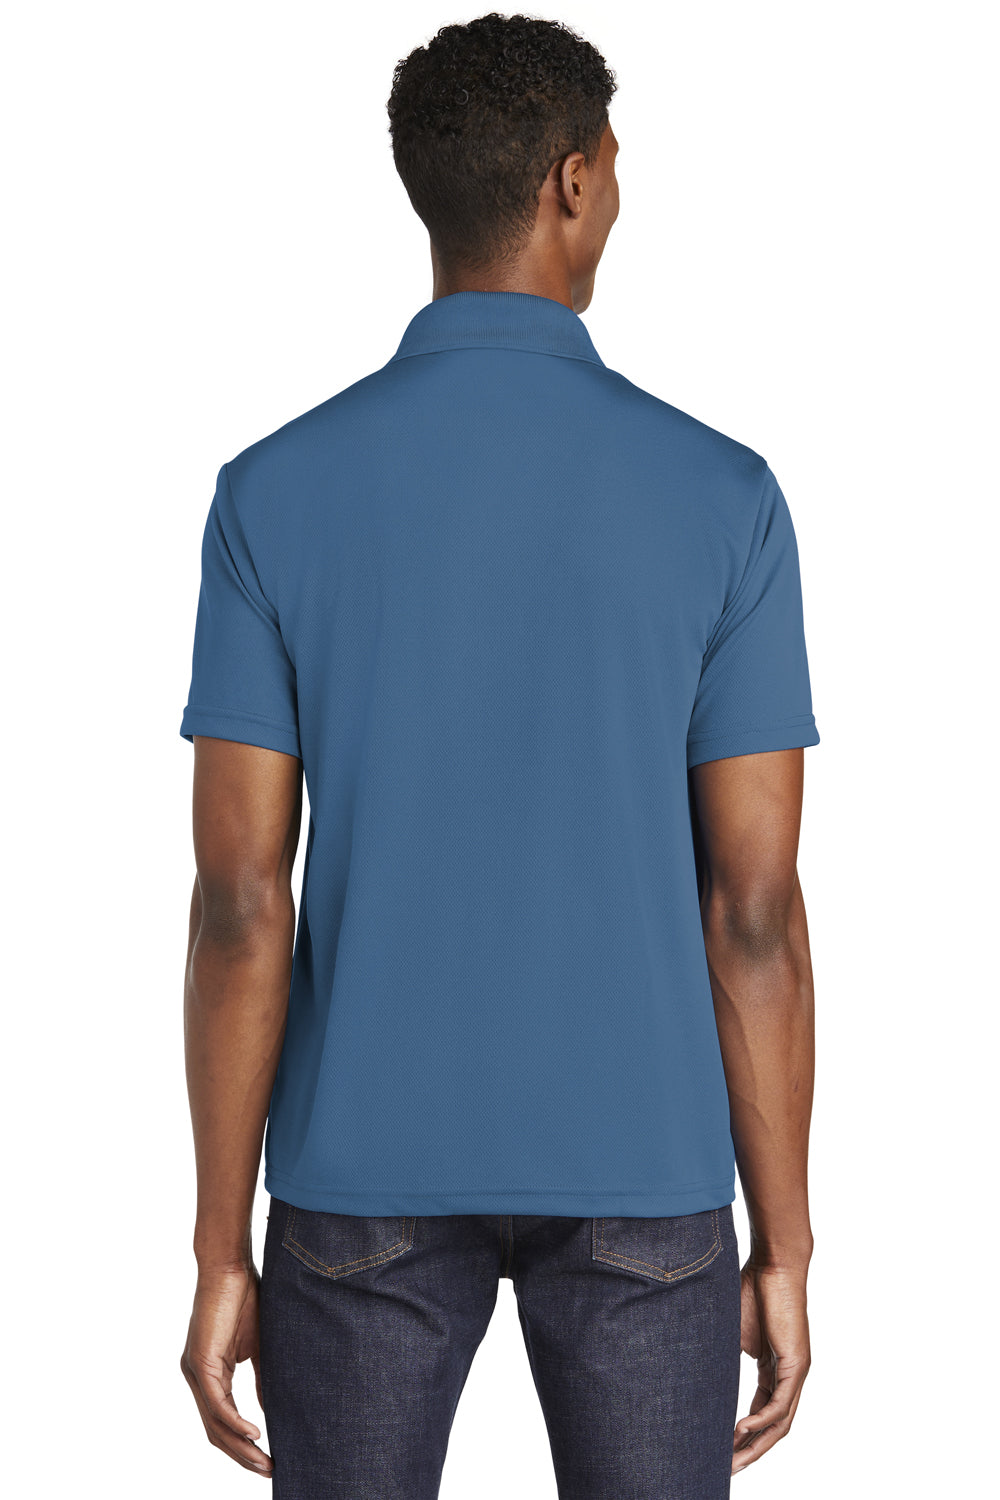 Sport-Tek ST640 Mens RacerMesh Moisture Wicking Short Sleeve Polo Shirt Dawn Blue Back